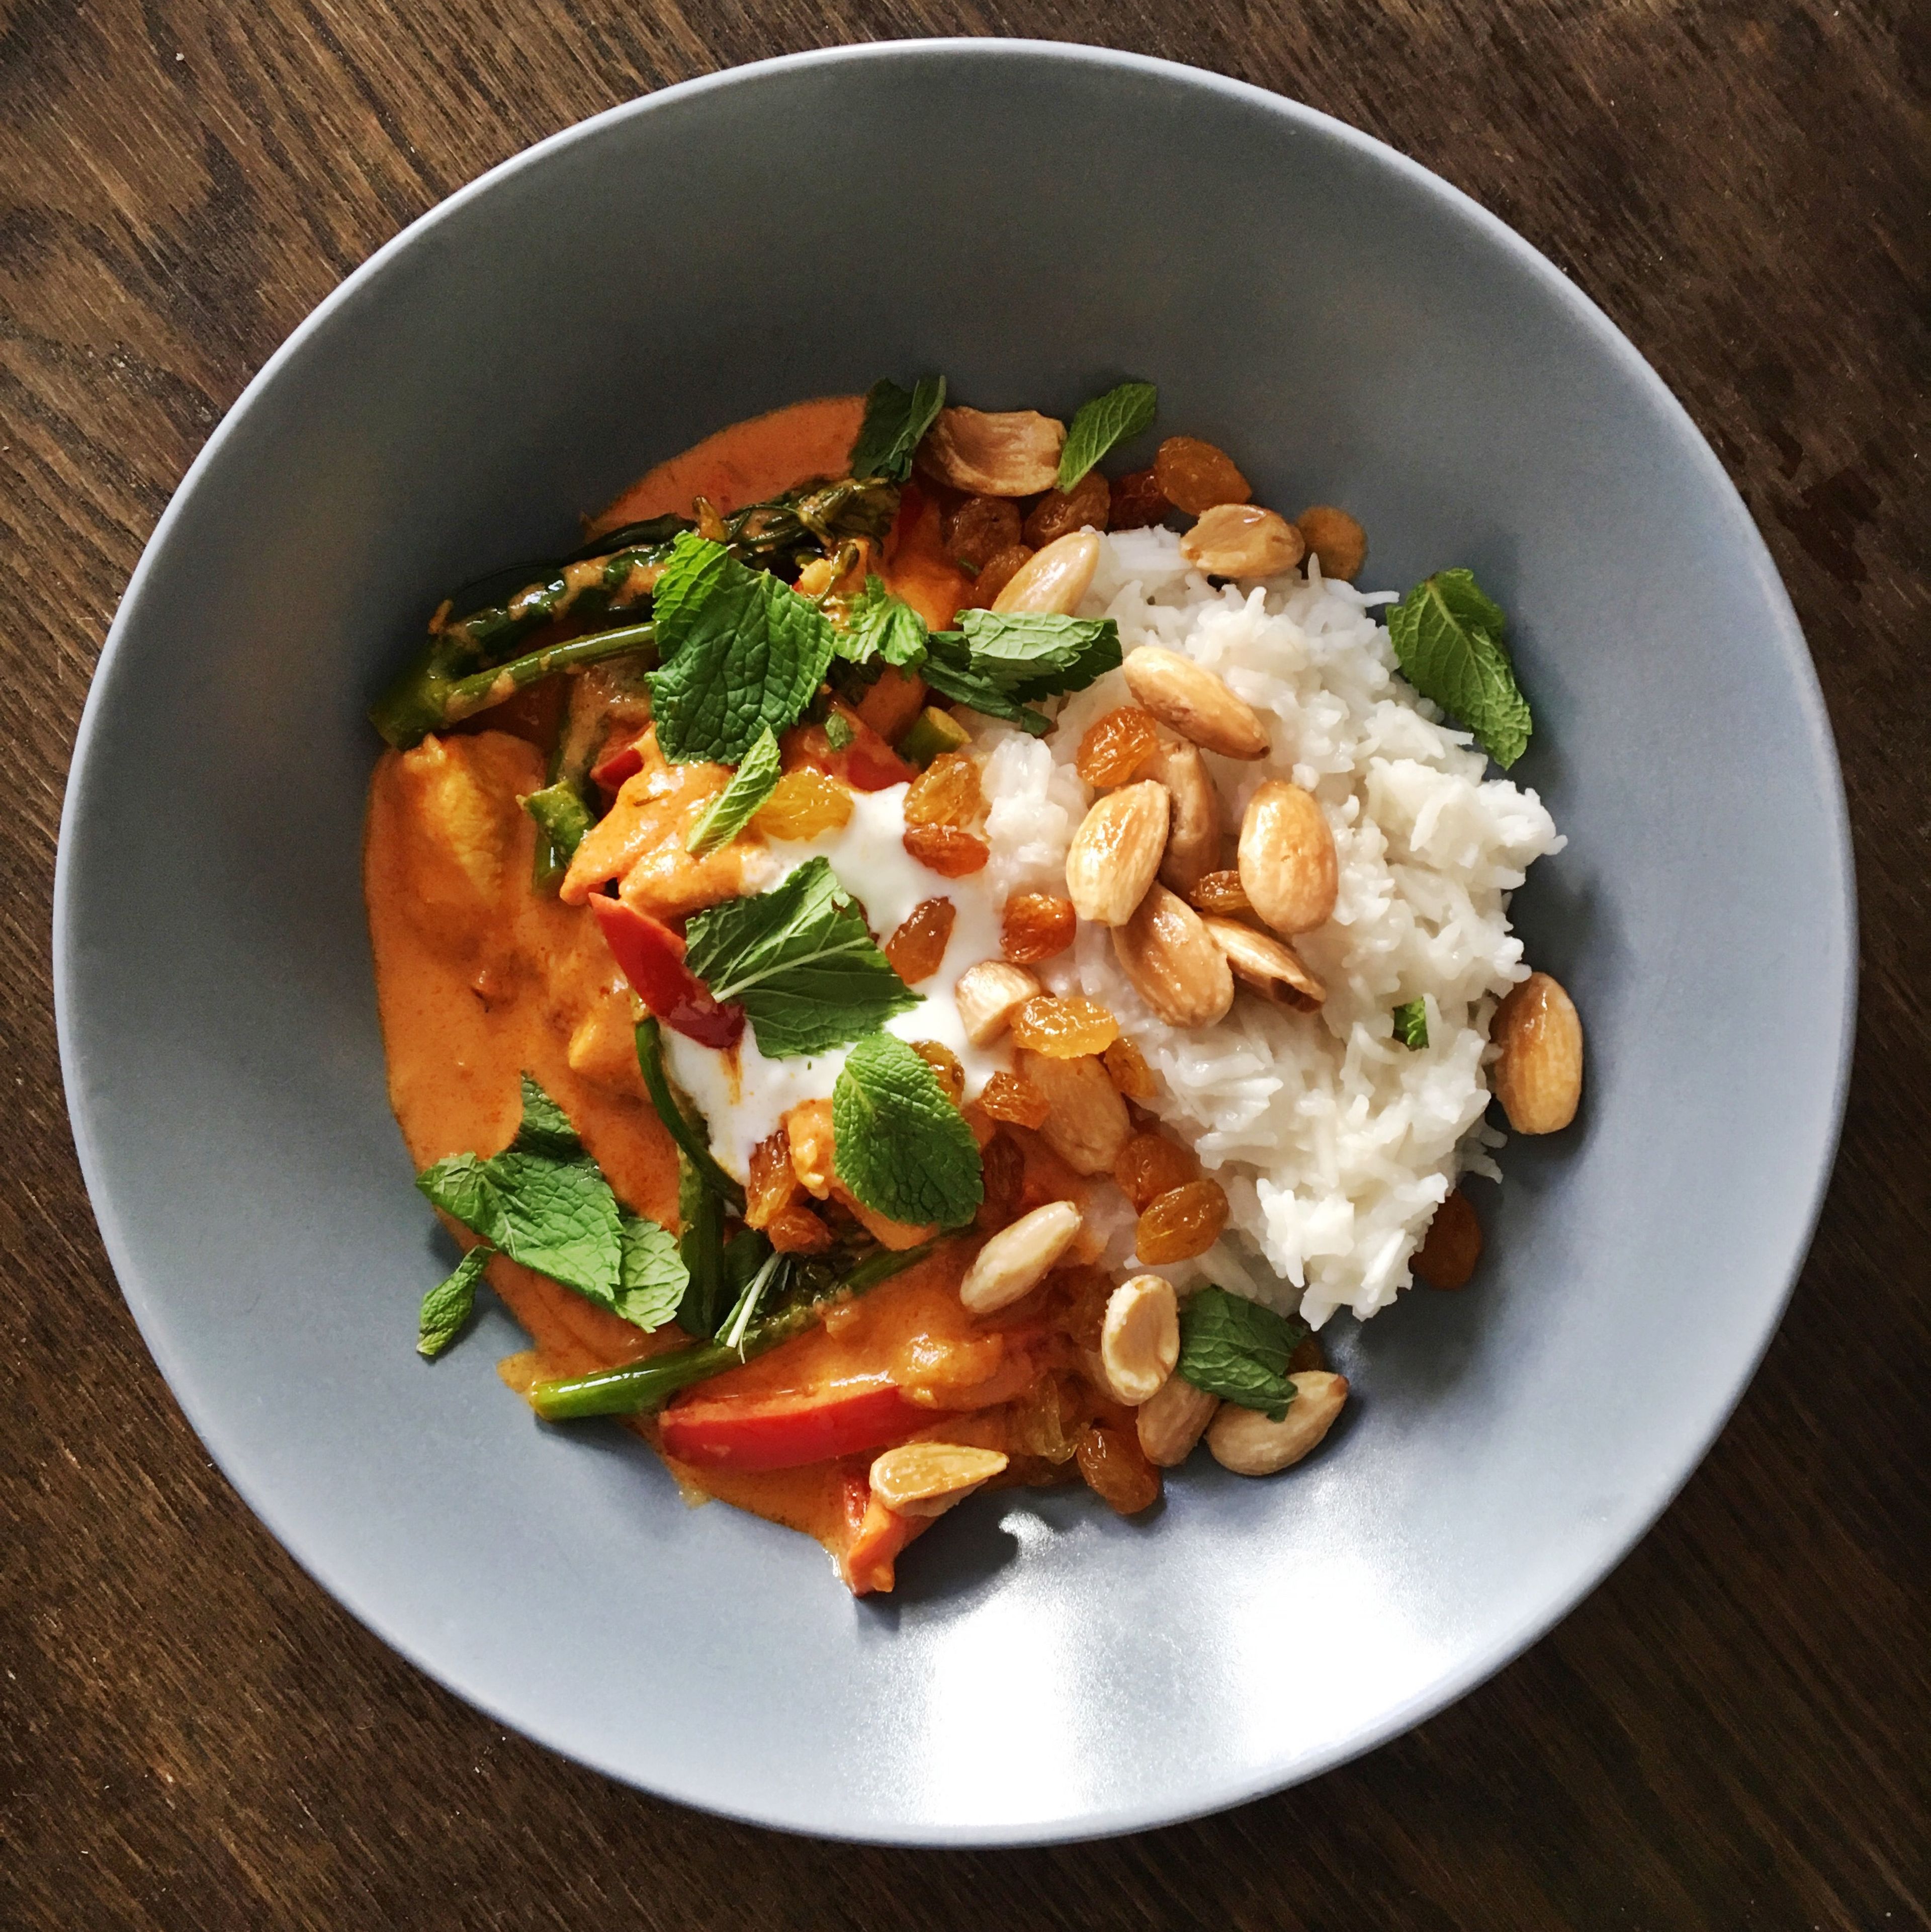 Curry mit Reis anrichten und mit Joghurt, Minze und den frittierten Mandeln und Rosinen garnieren. Guten Appetit! 👩🏼‍🍳 (Als Beilage empfehle ich frittiertes Papadam Brot.)